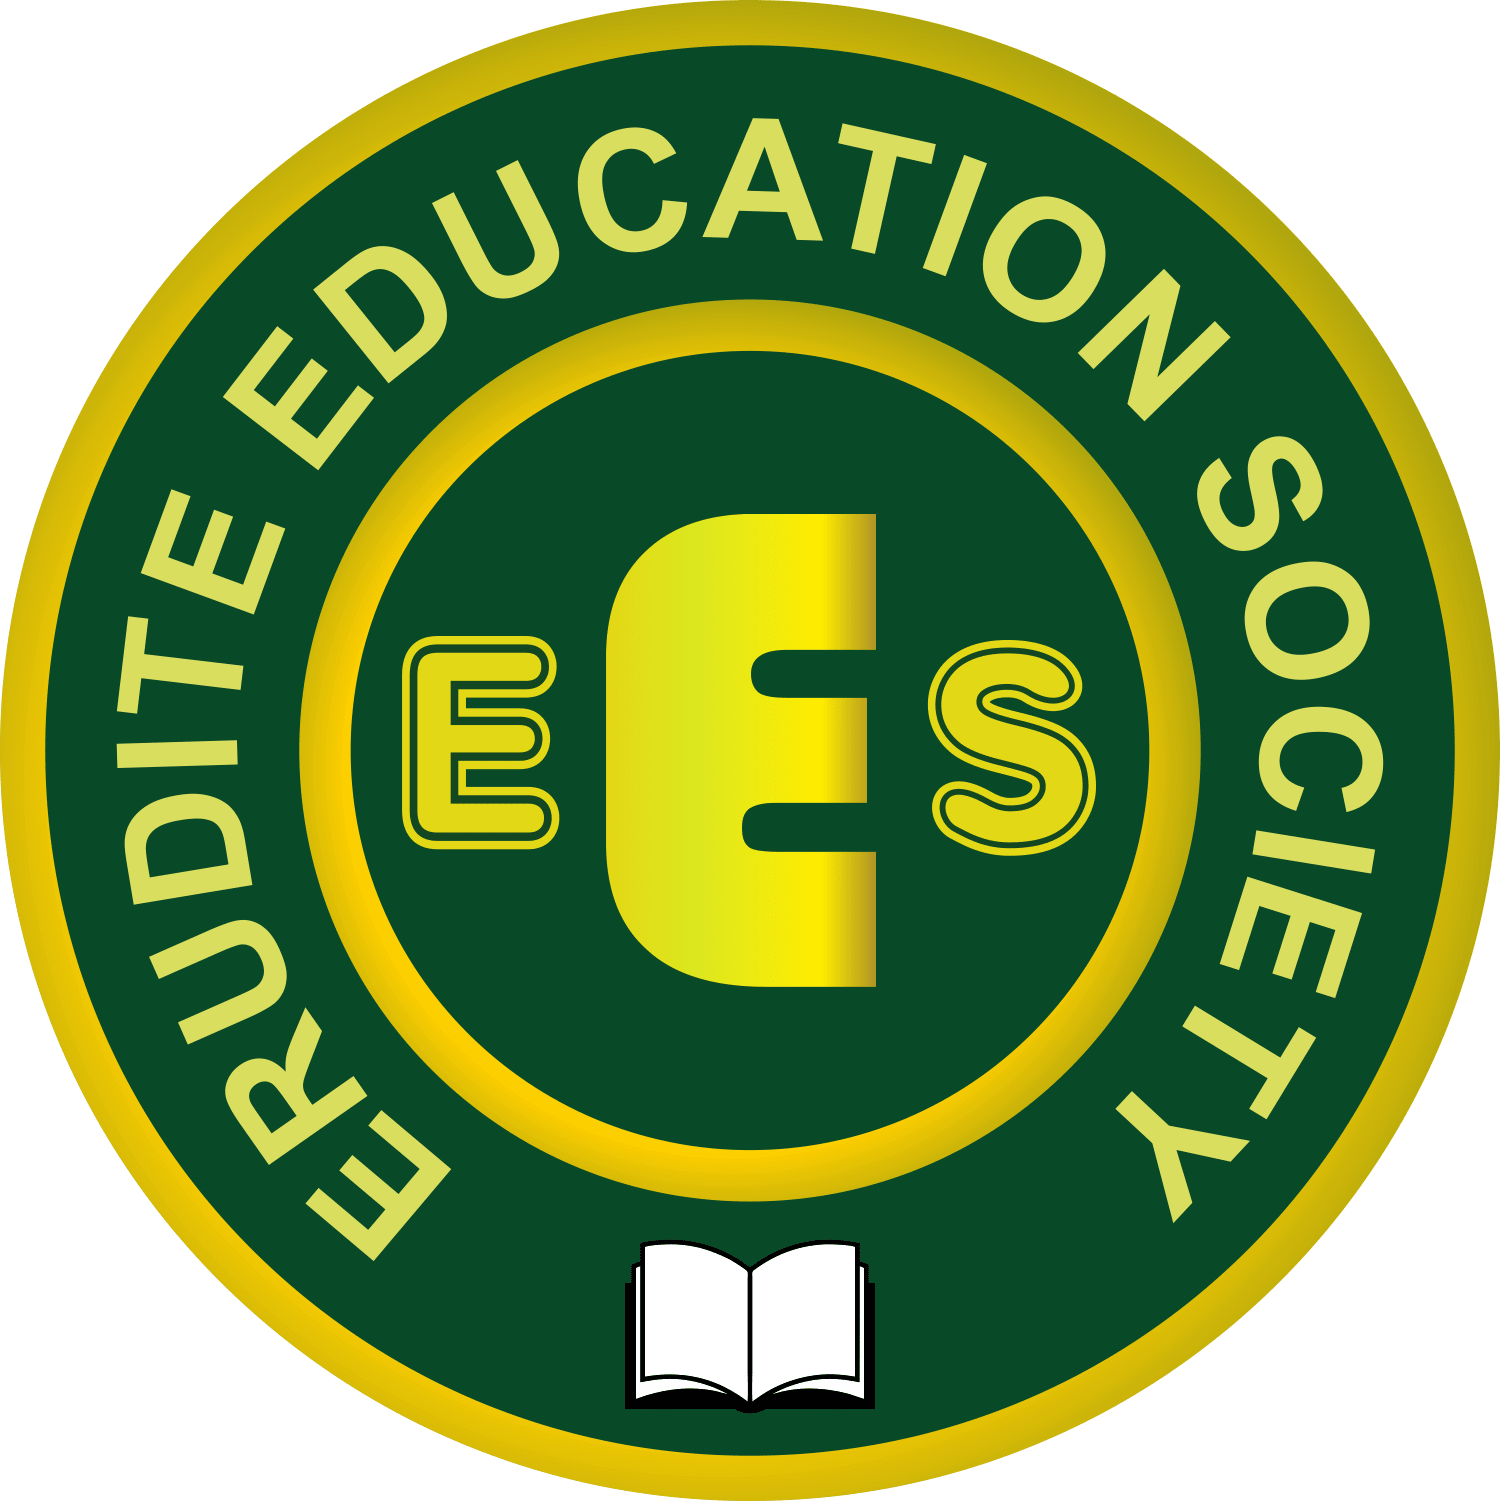 Erudite Education Society